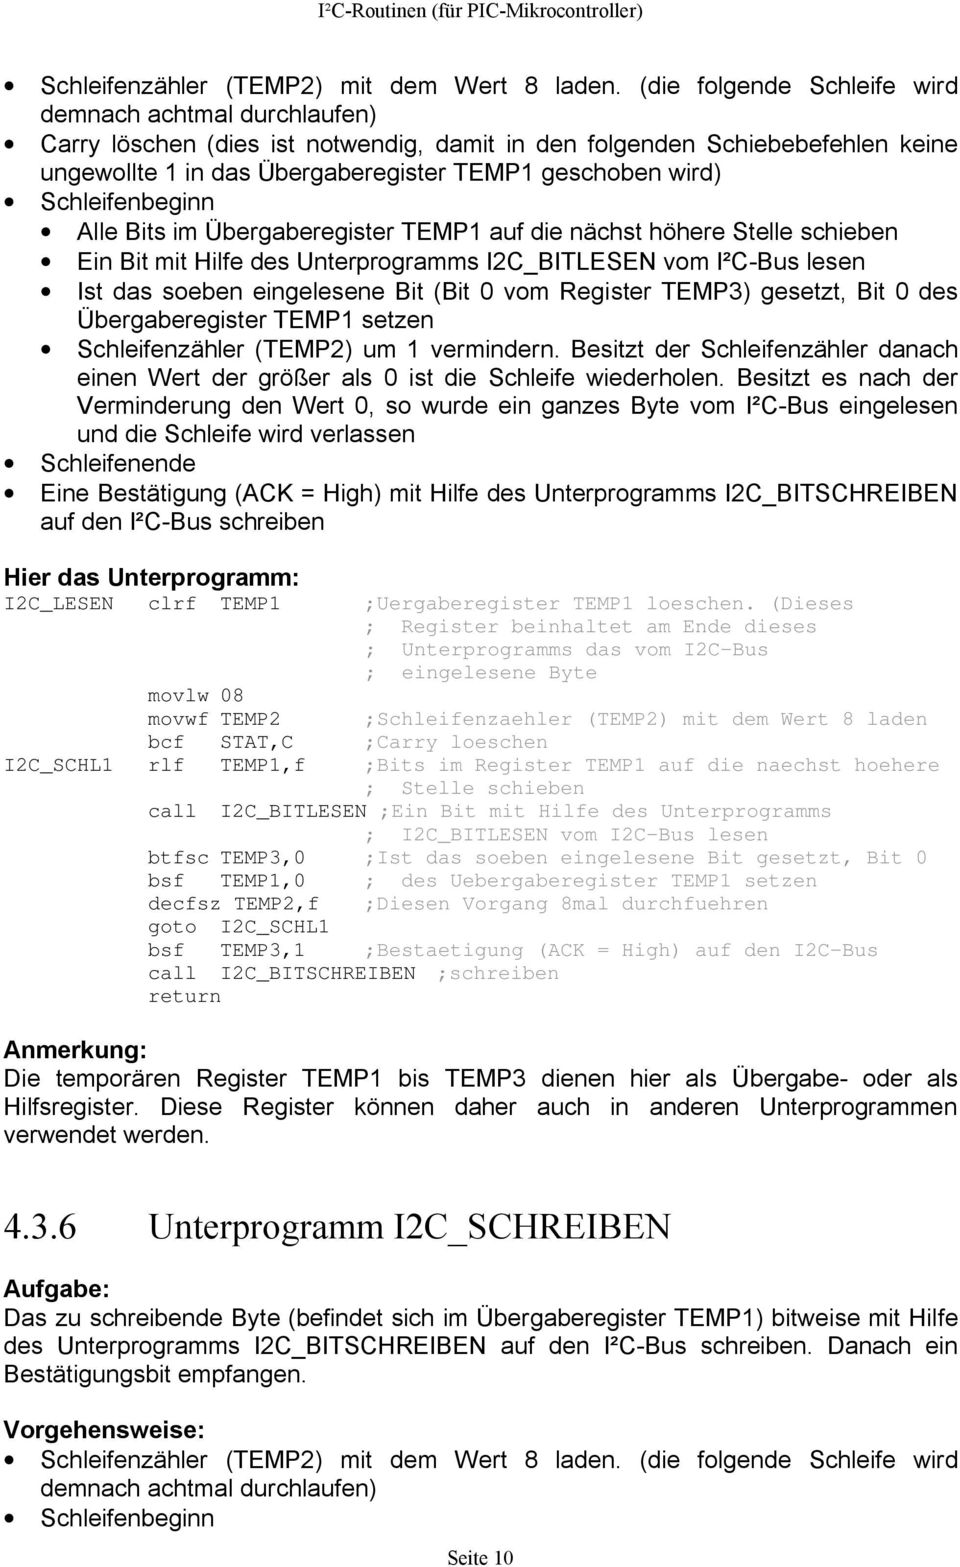 Schleifenbeginn Alle Bits im Übergaberegister TEMP1 auf die nächst höhere Stelle schieben Ein Bit mit Hilfe des Unterprogramms I2C_BITLESEN vom I²C-Bus lesen Ist das soeben eingelesene Bit (Bit 0 vom